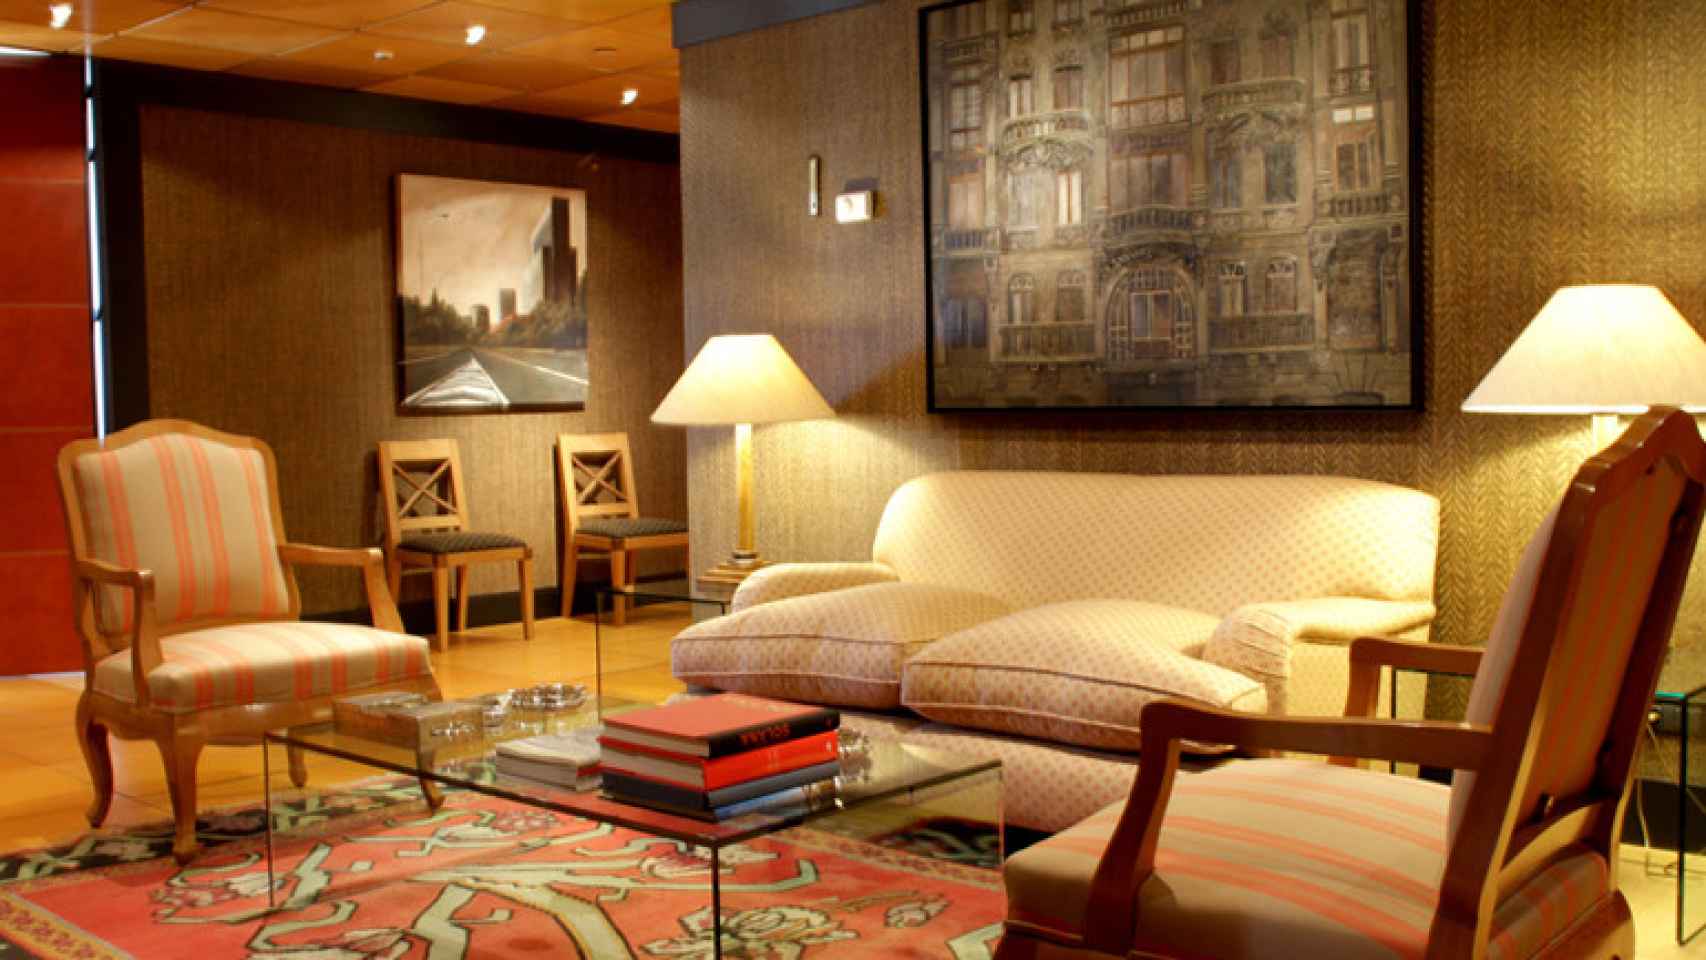 El Cuzco IV cuenta con servicios exclusivos y zonas de descanso y trabajo para sus inquilinos.